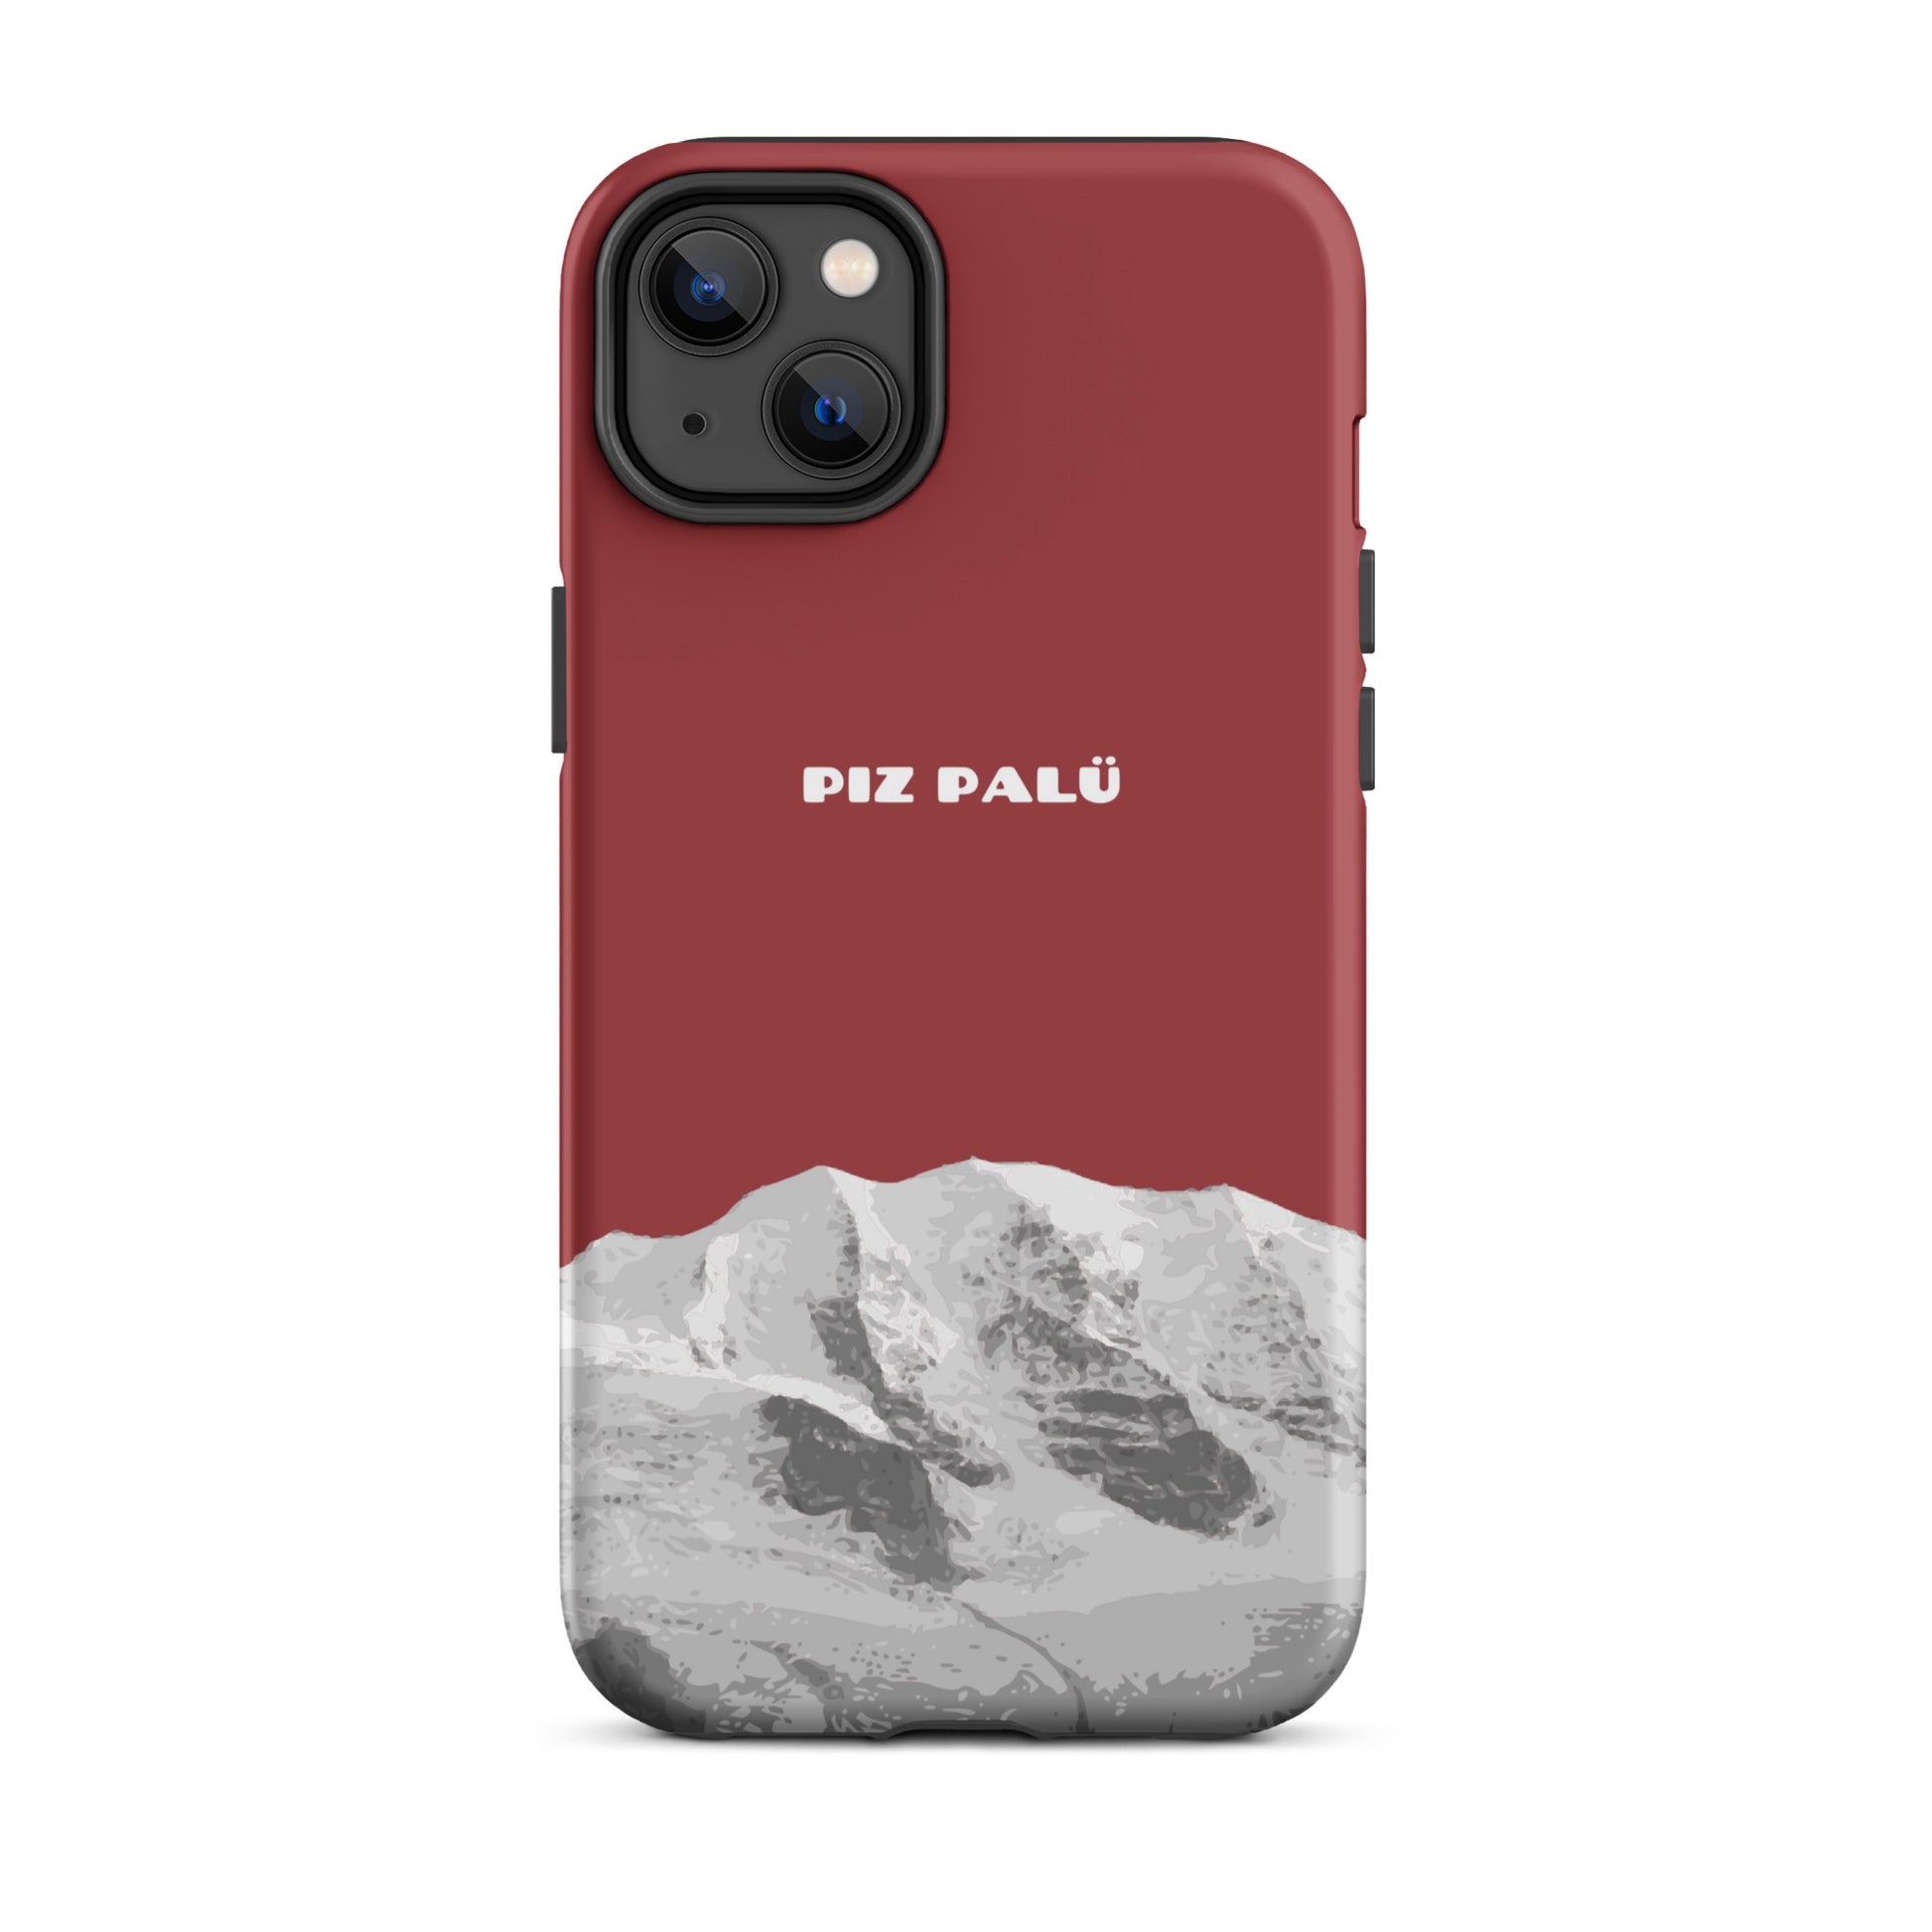 Hülle für das iPhone 14 Plus von Apple in der Farbe Pastellviolett, dass den Piz Palü in Graubünden zeigt.